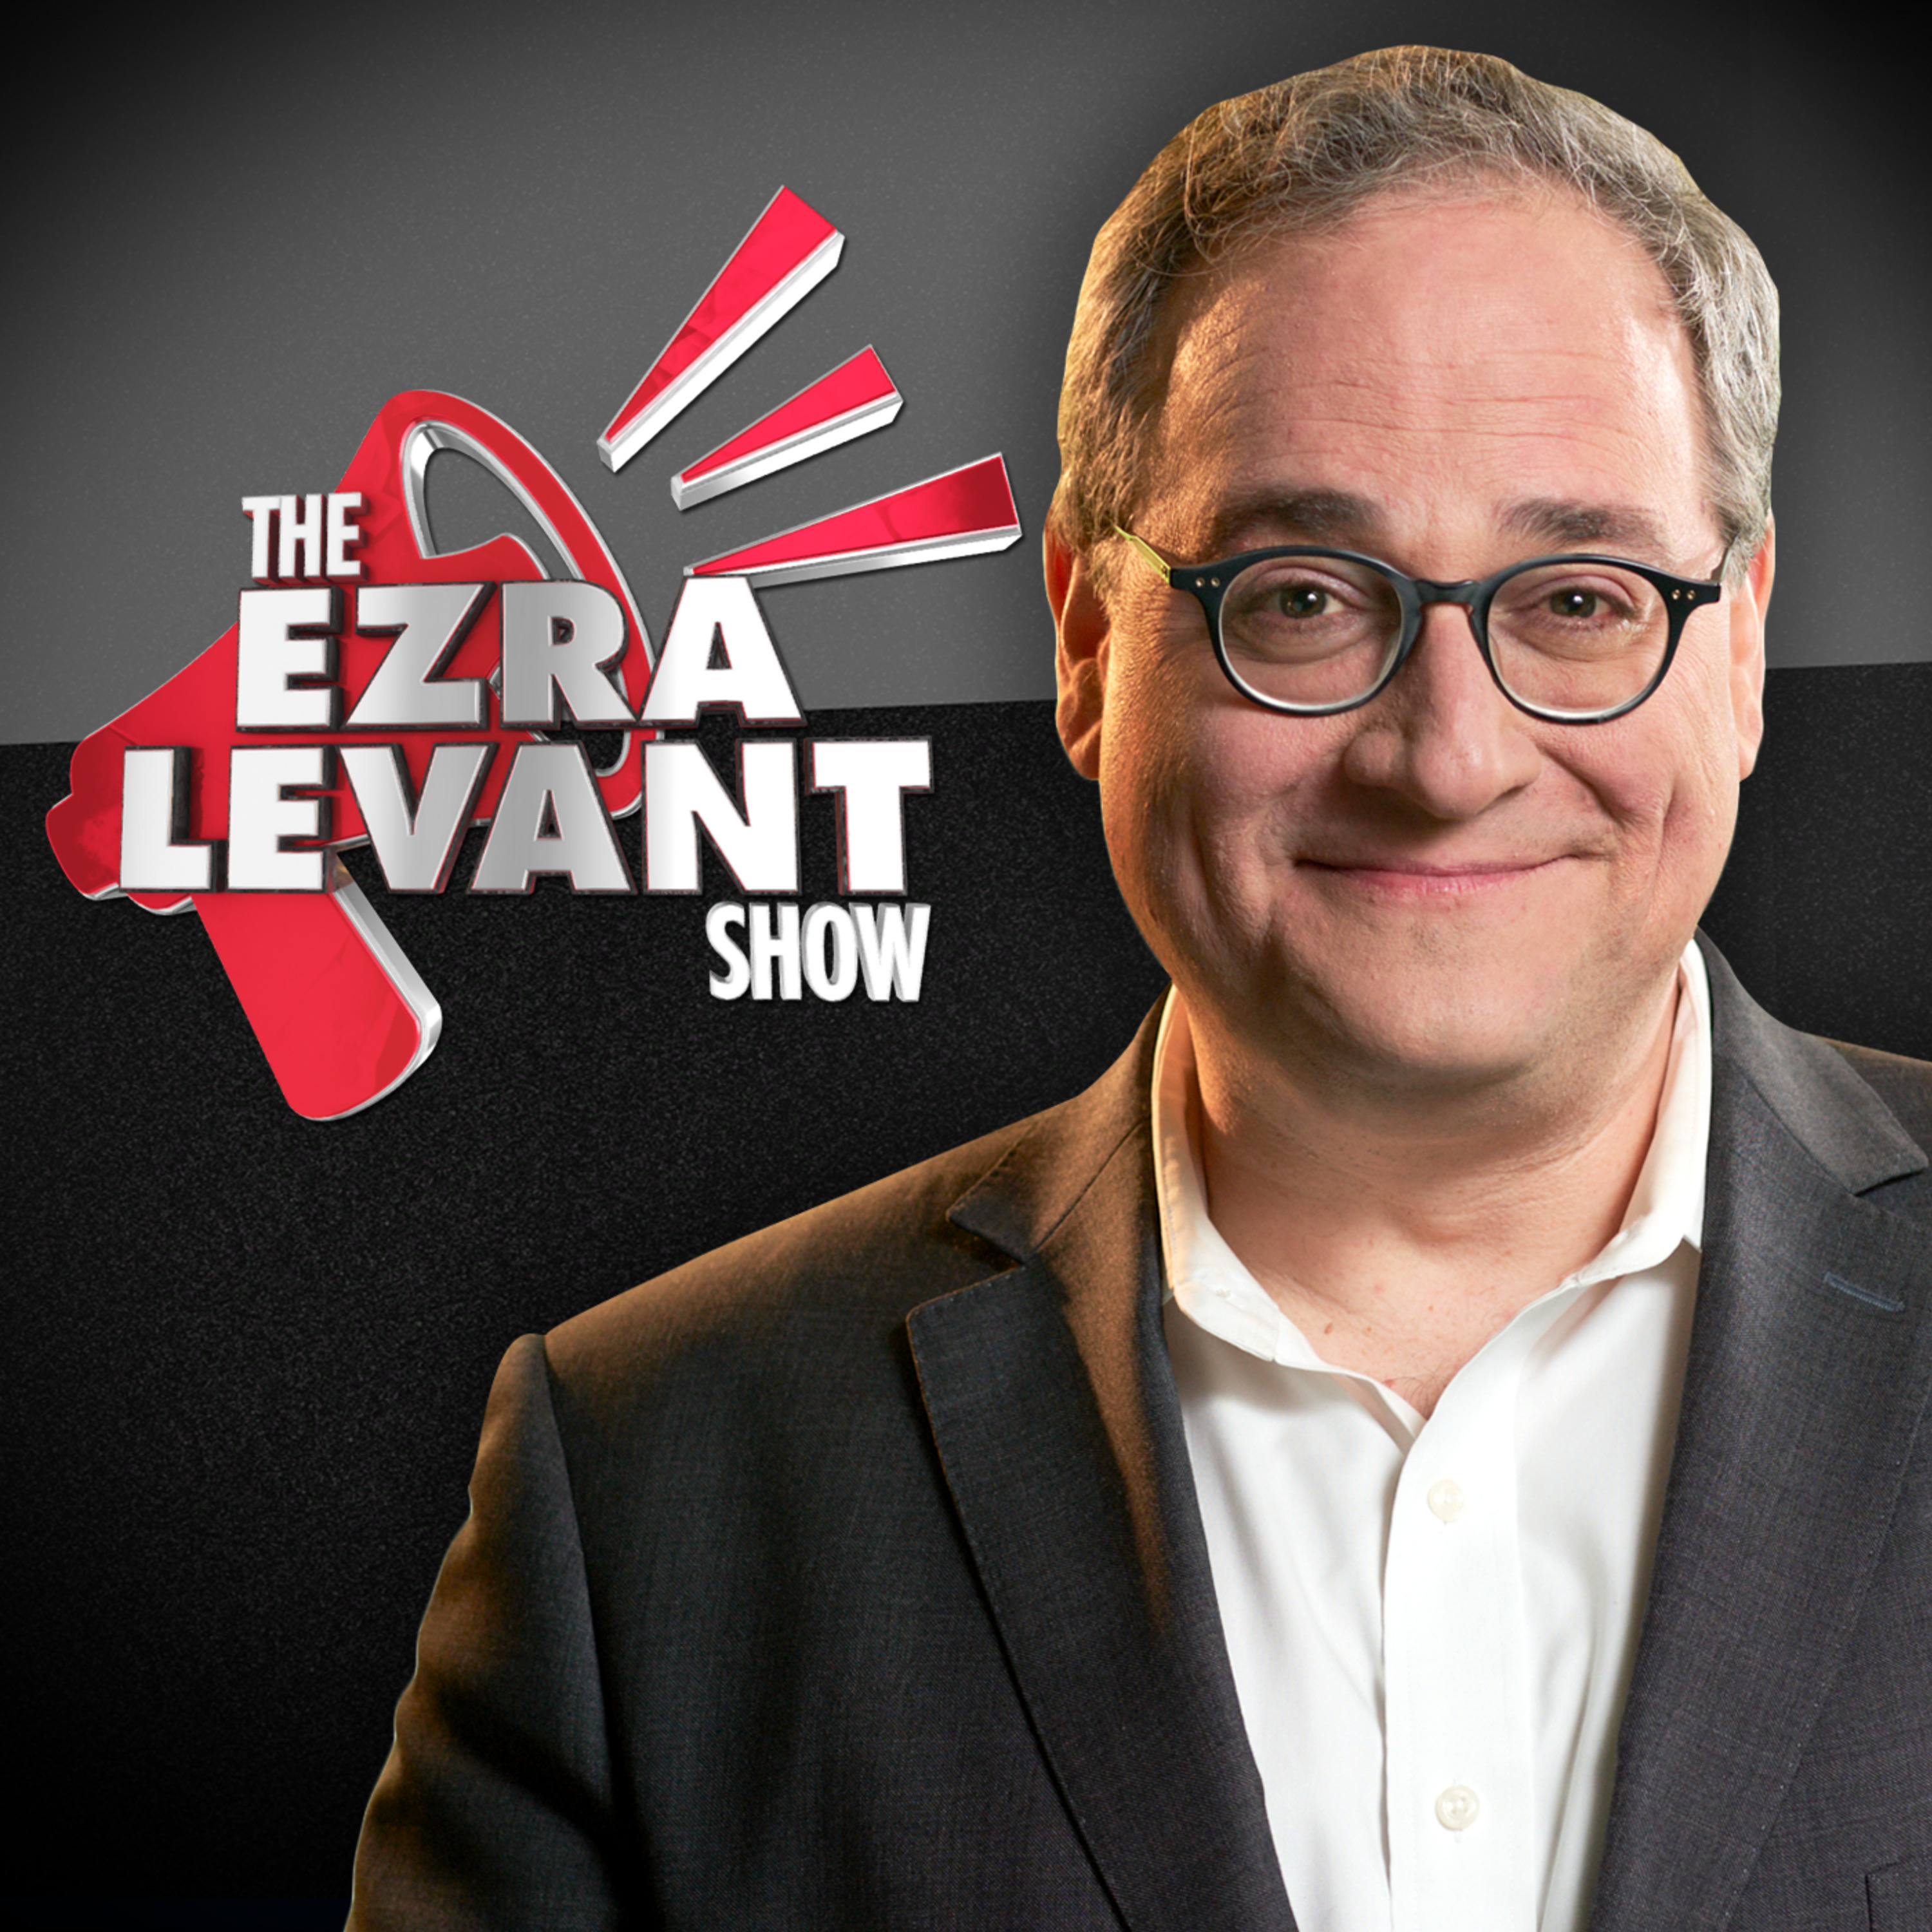 EZRA LEVANT | Why Rebel News sends reporters to faraway globalist meetings